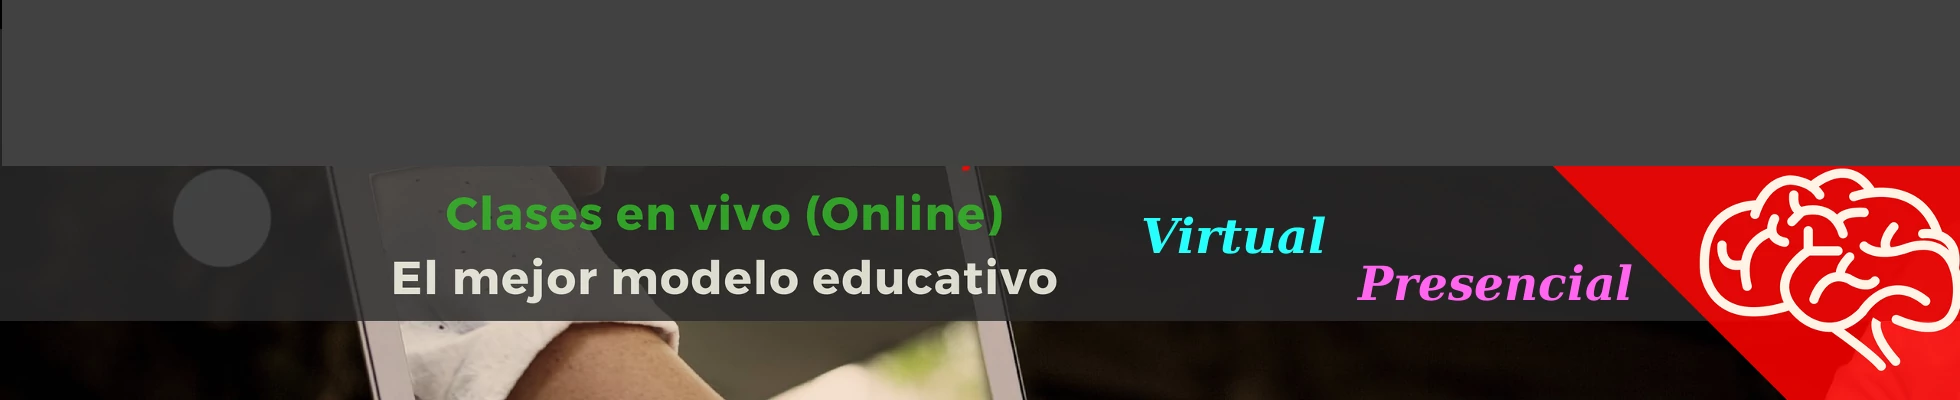 Cursos online en vivo virtual